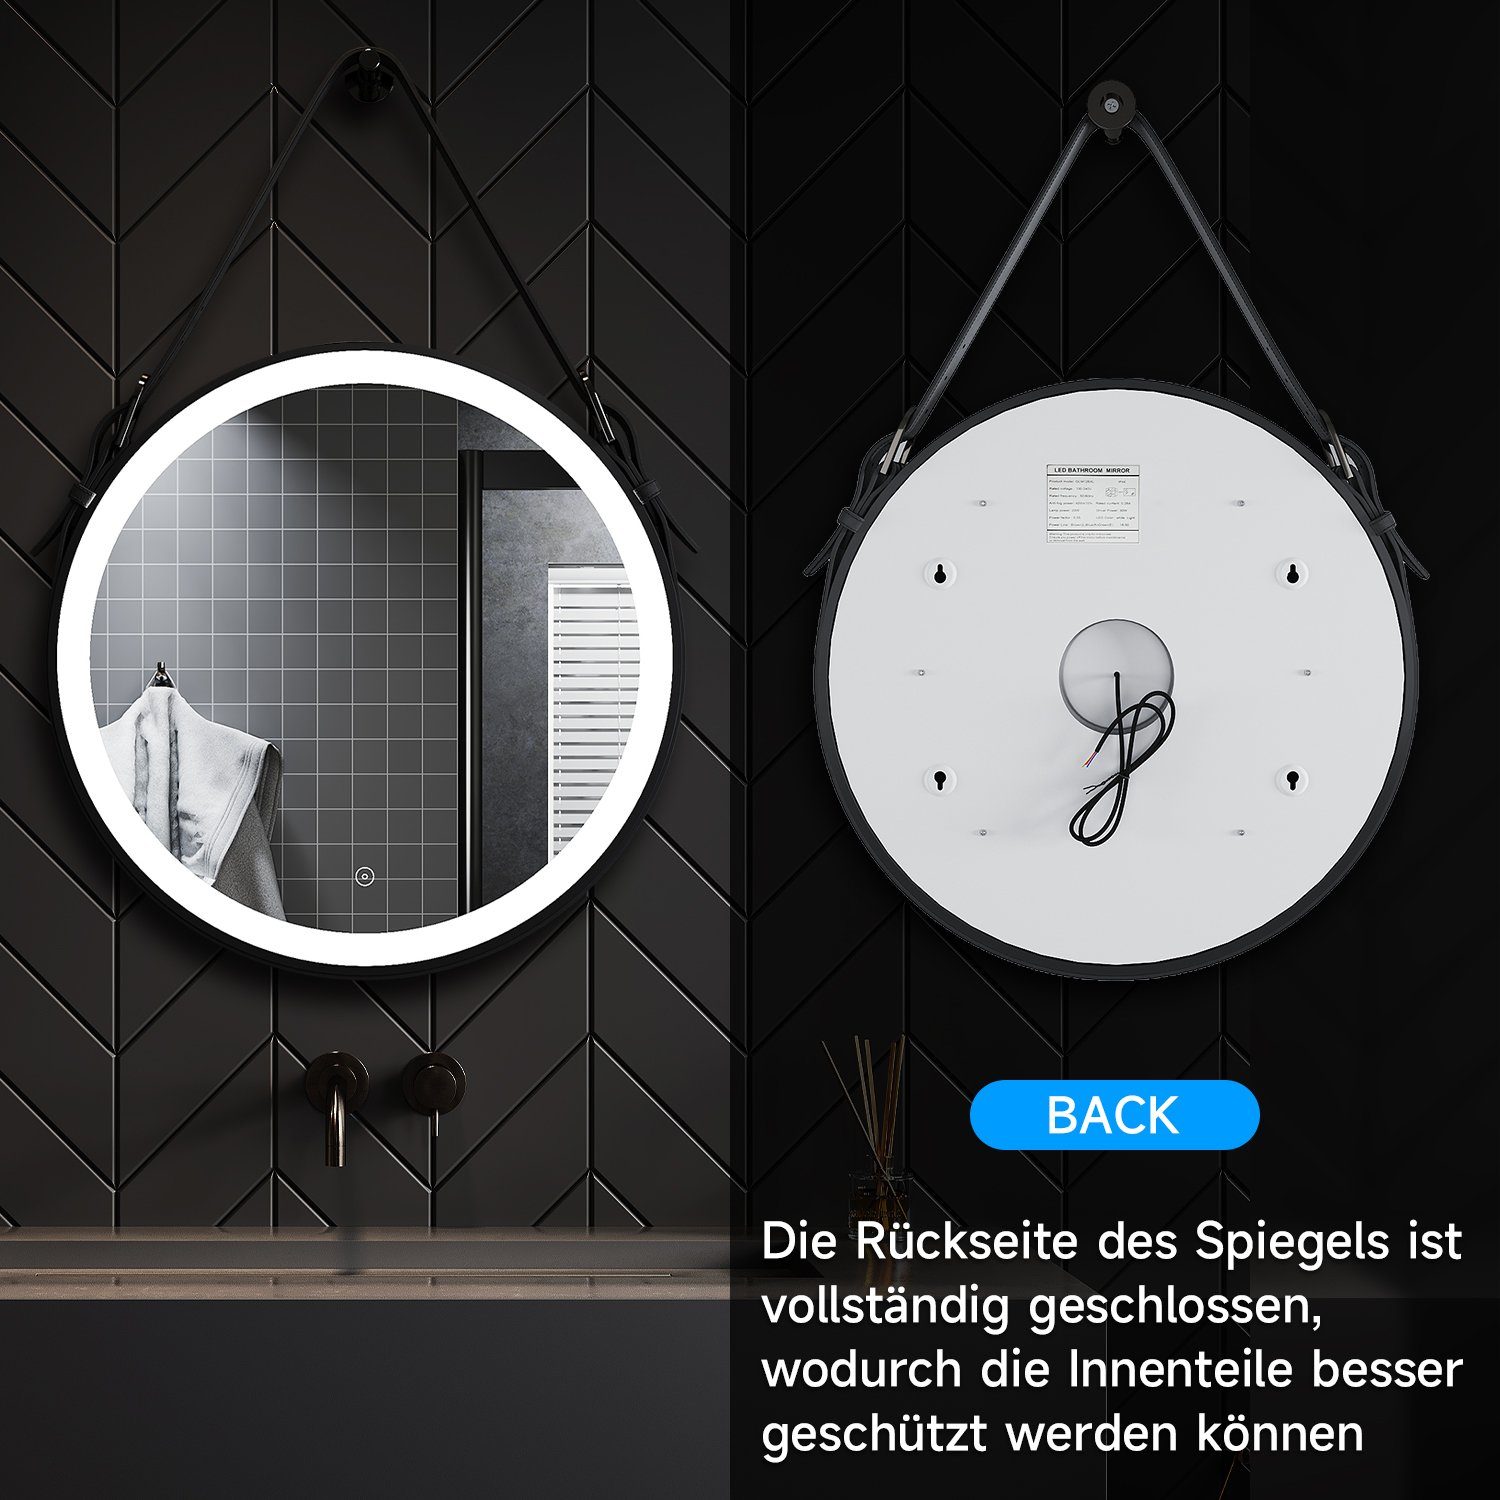 SONNI Badspiegel Badezimmerspiegel Beleuchtung LED cm Ø Modern Touch, 60 Badspiegel mit Schminkspiegel Rund Touchschalter Beschlagfrei,Verstellbarer